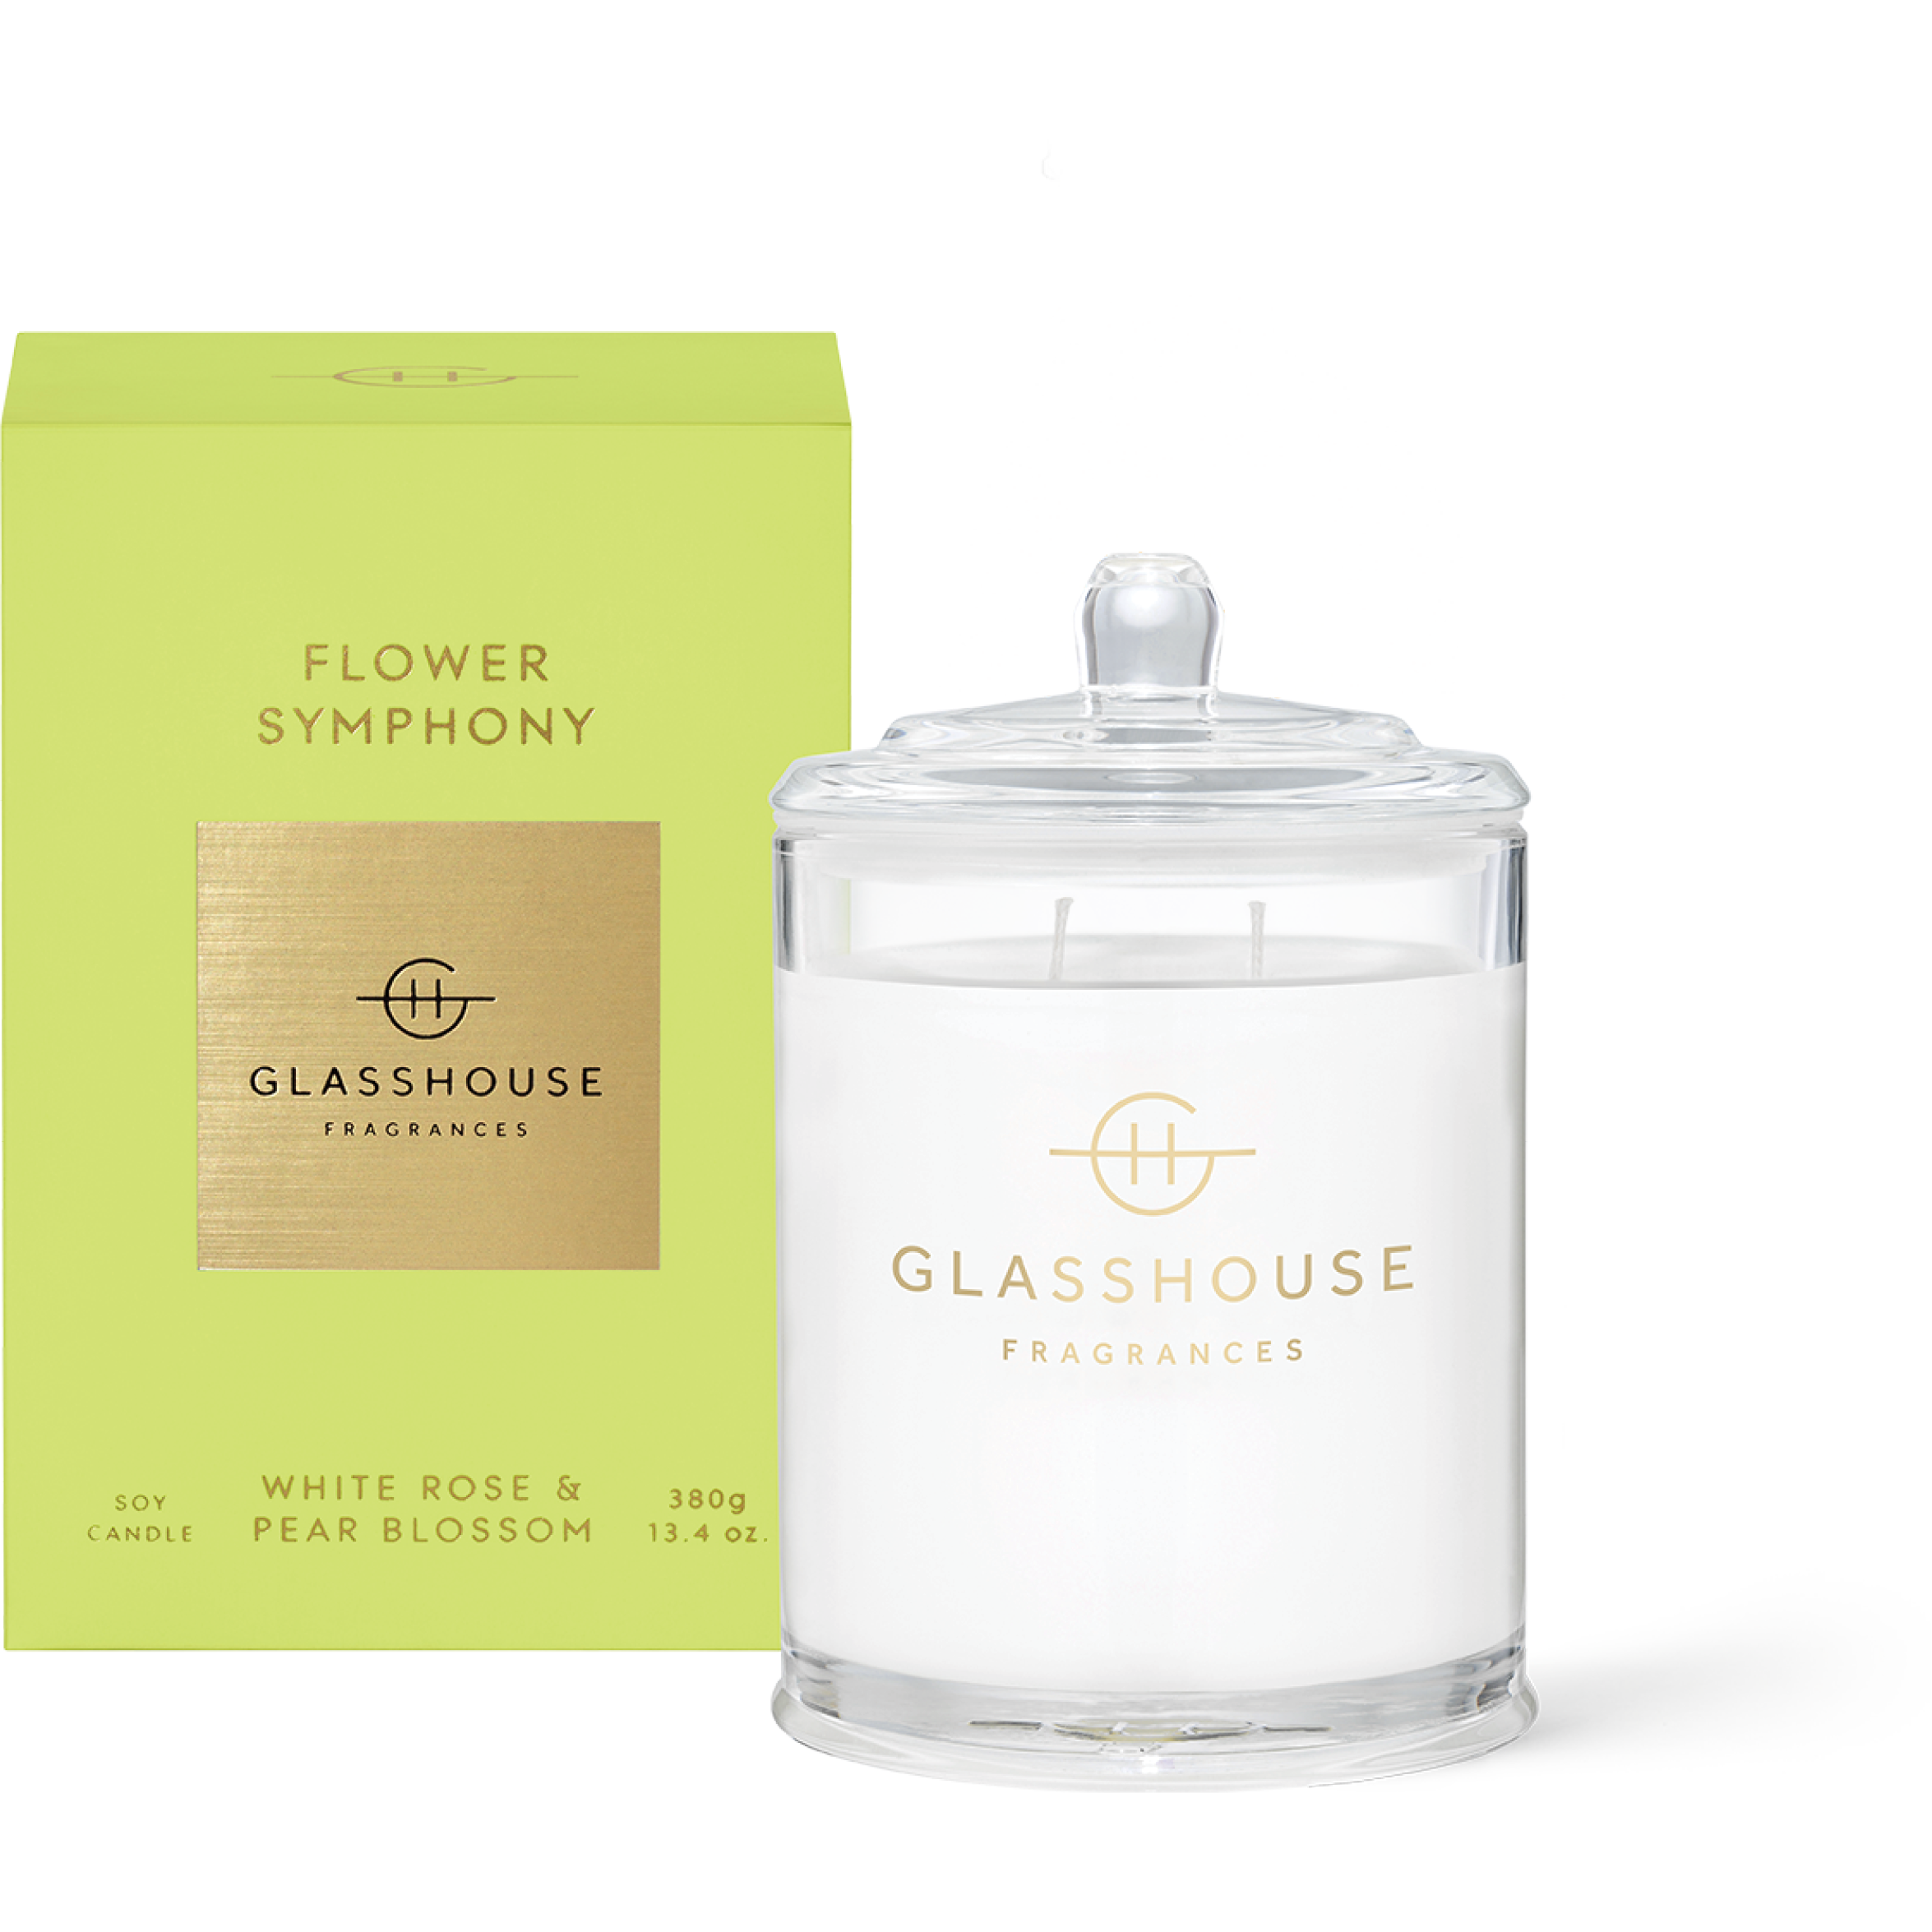 Glasshouse FLOWER SYMPHONY Candle